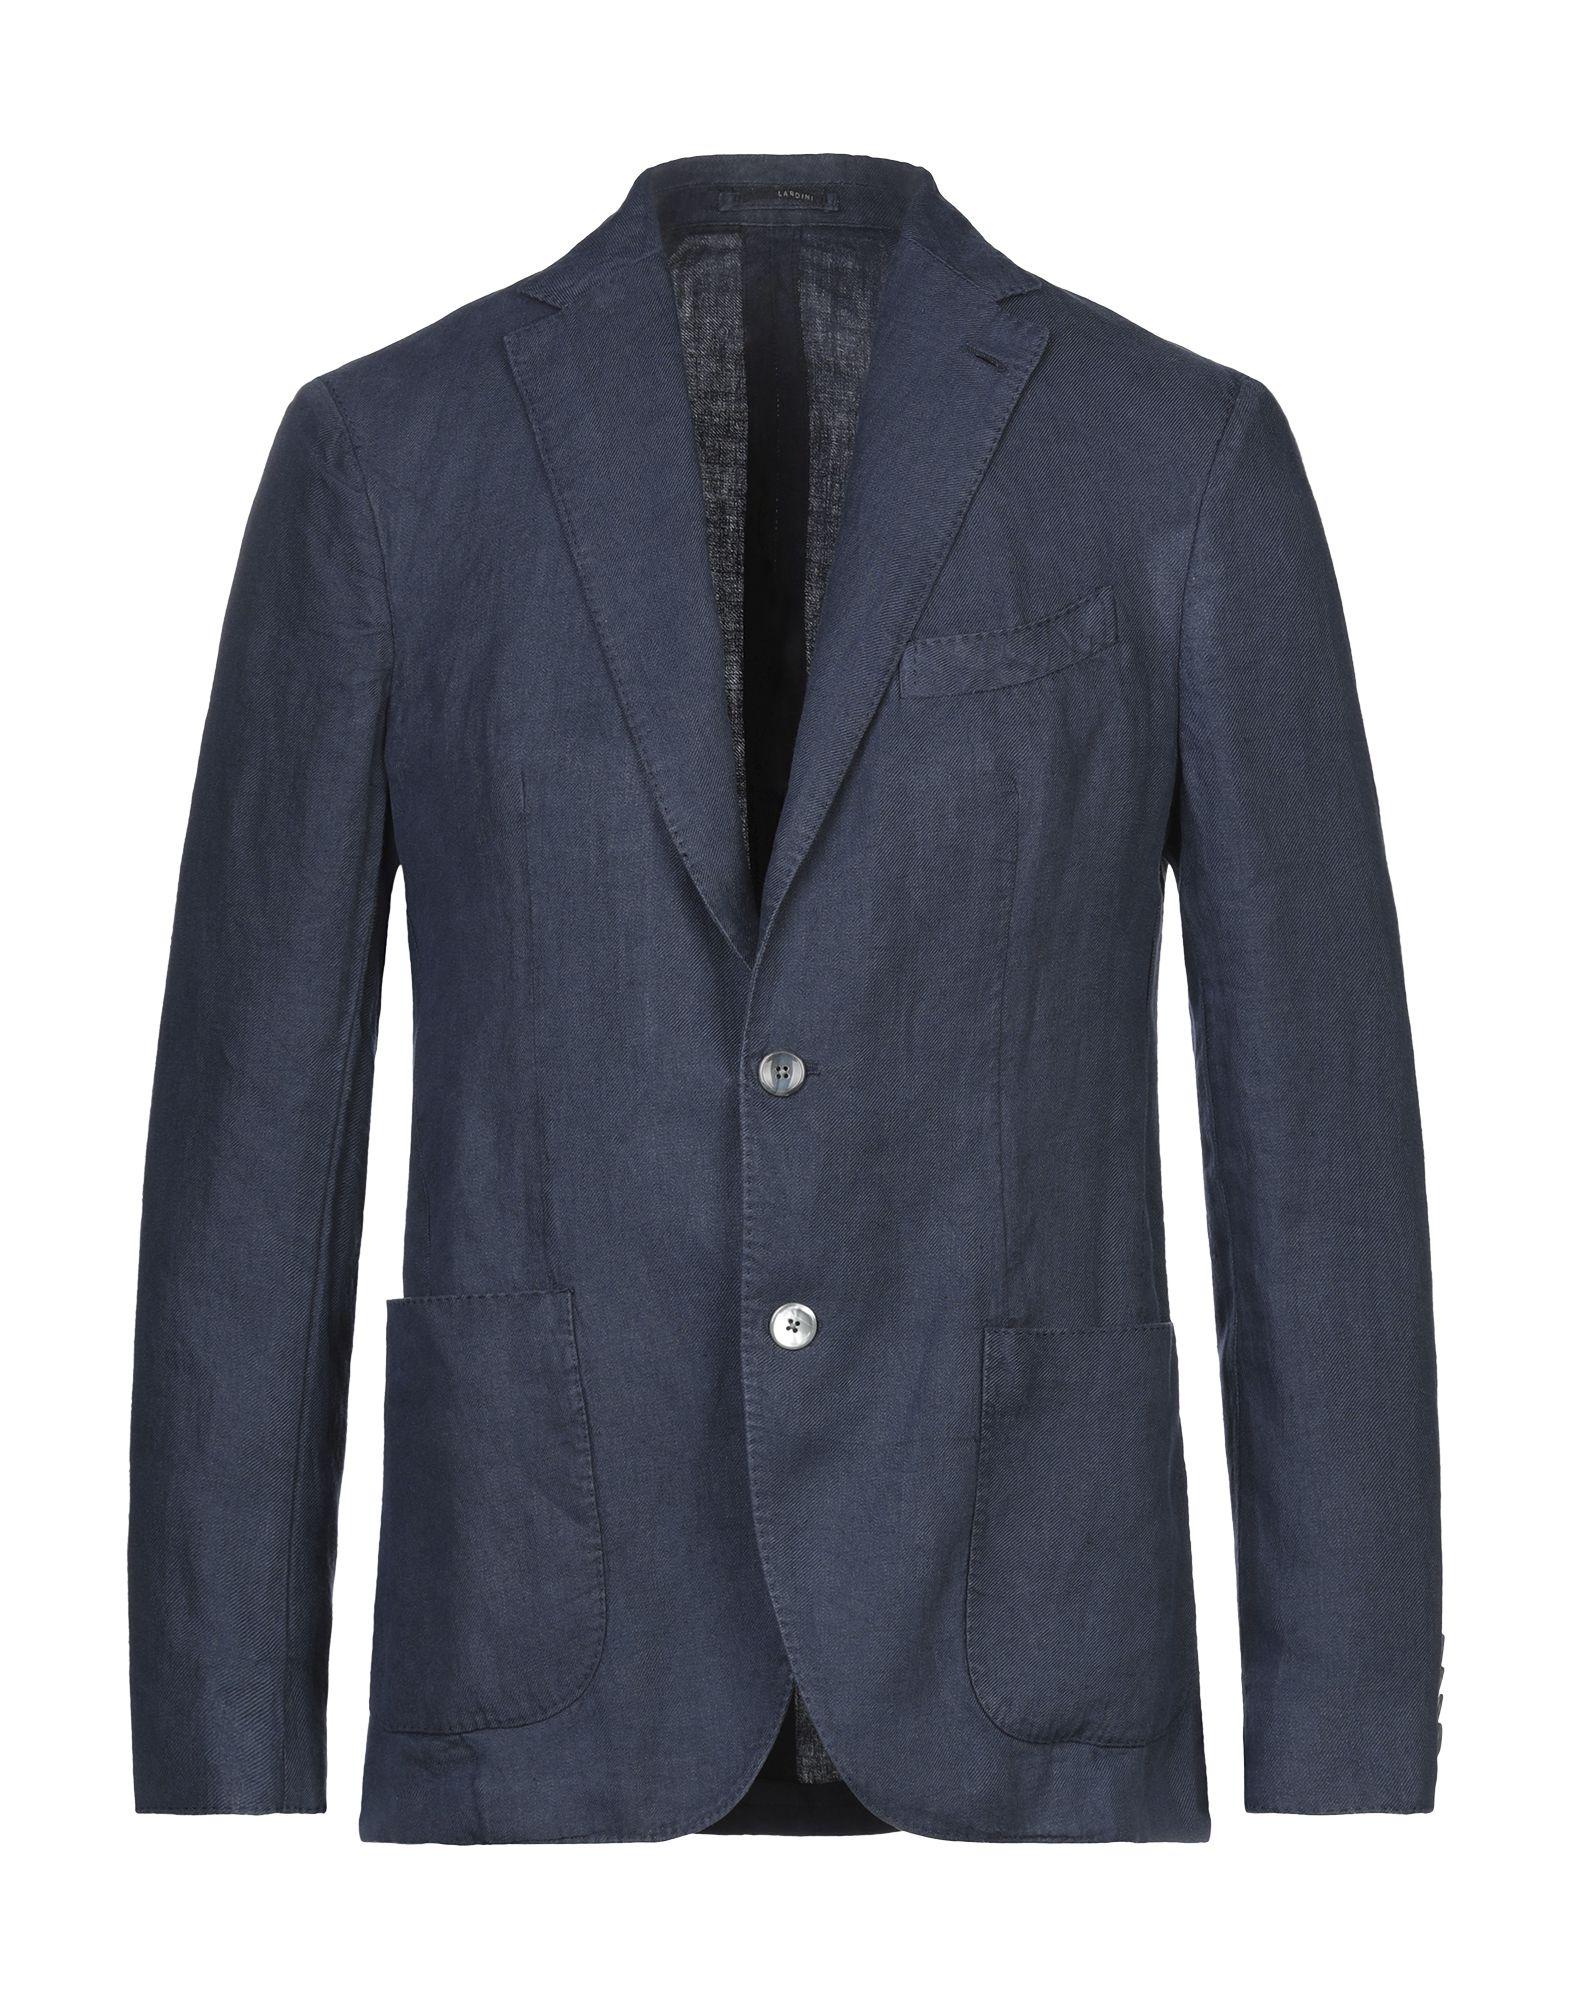 Lardini Suit Jacket in Dark Blue (Blue) for Men - Lyst